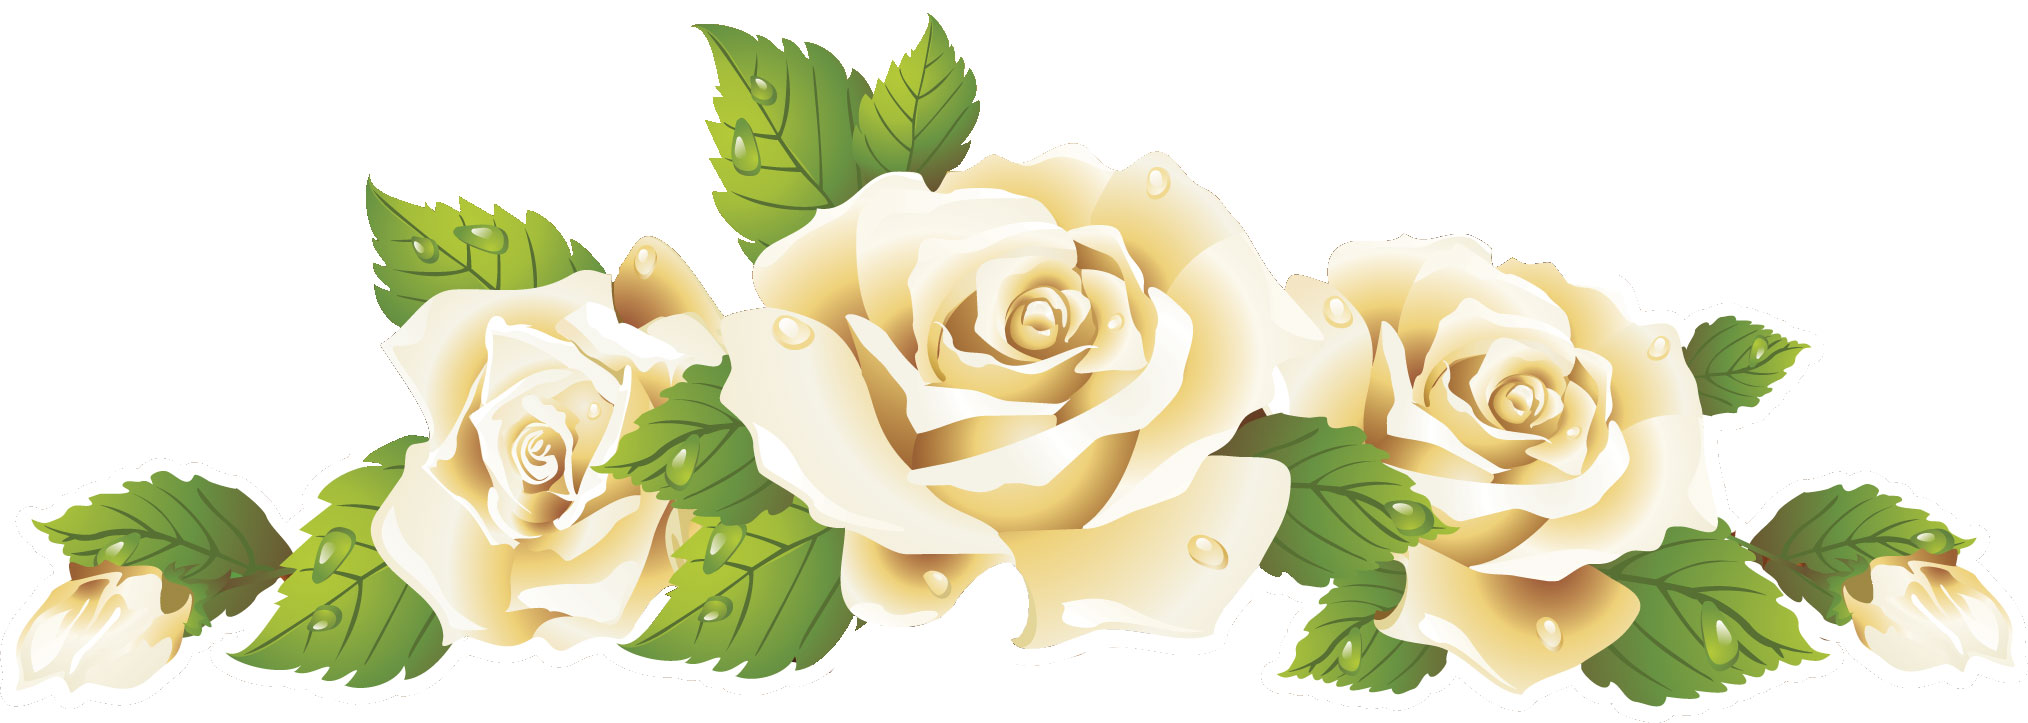 花のライン線イラスト-白バラ